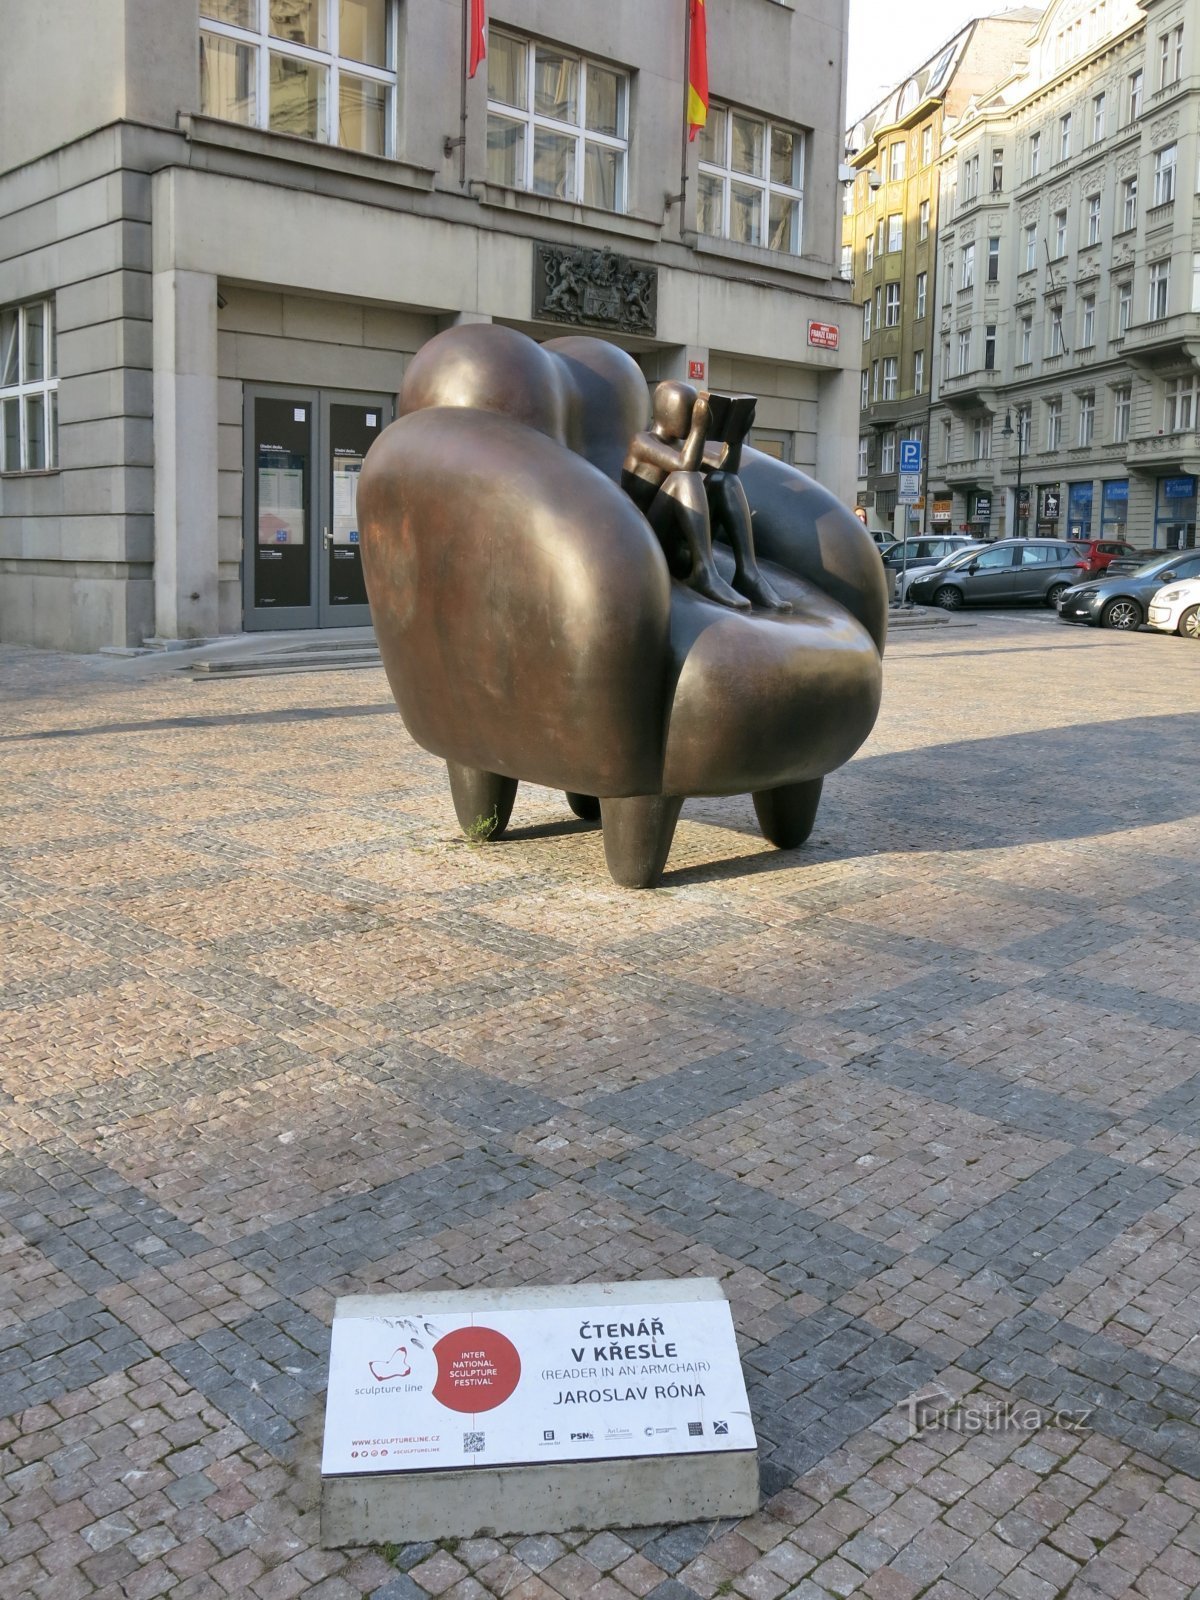 プラハ (旧市街) – フランツ・カフカ広場の椅子に座るロヌーヴ・チェテナーシュ